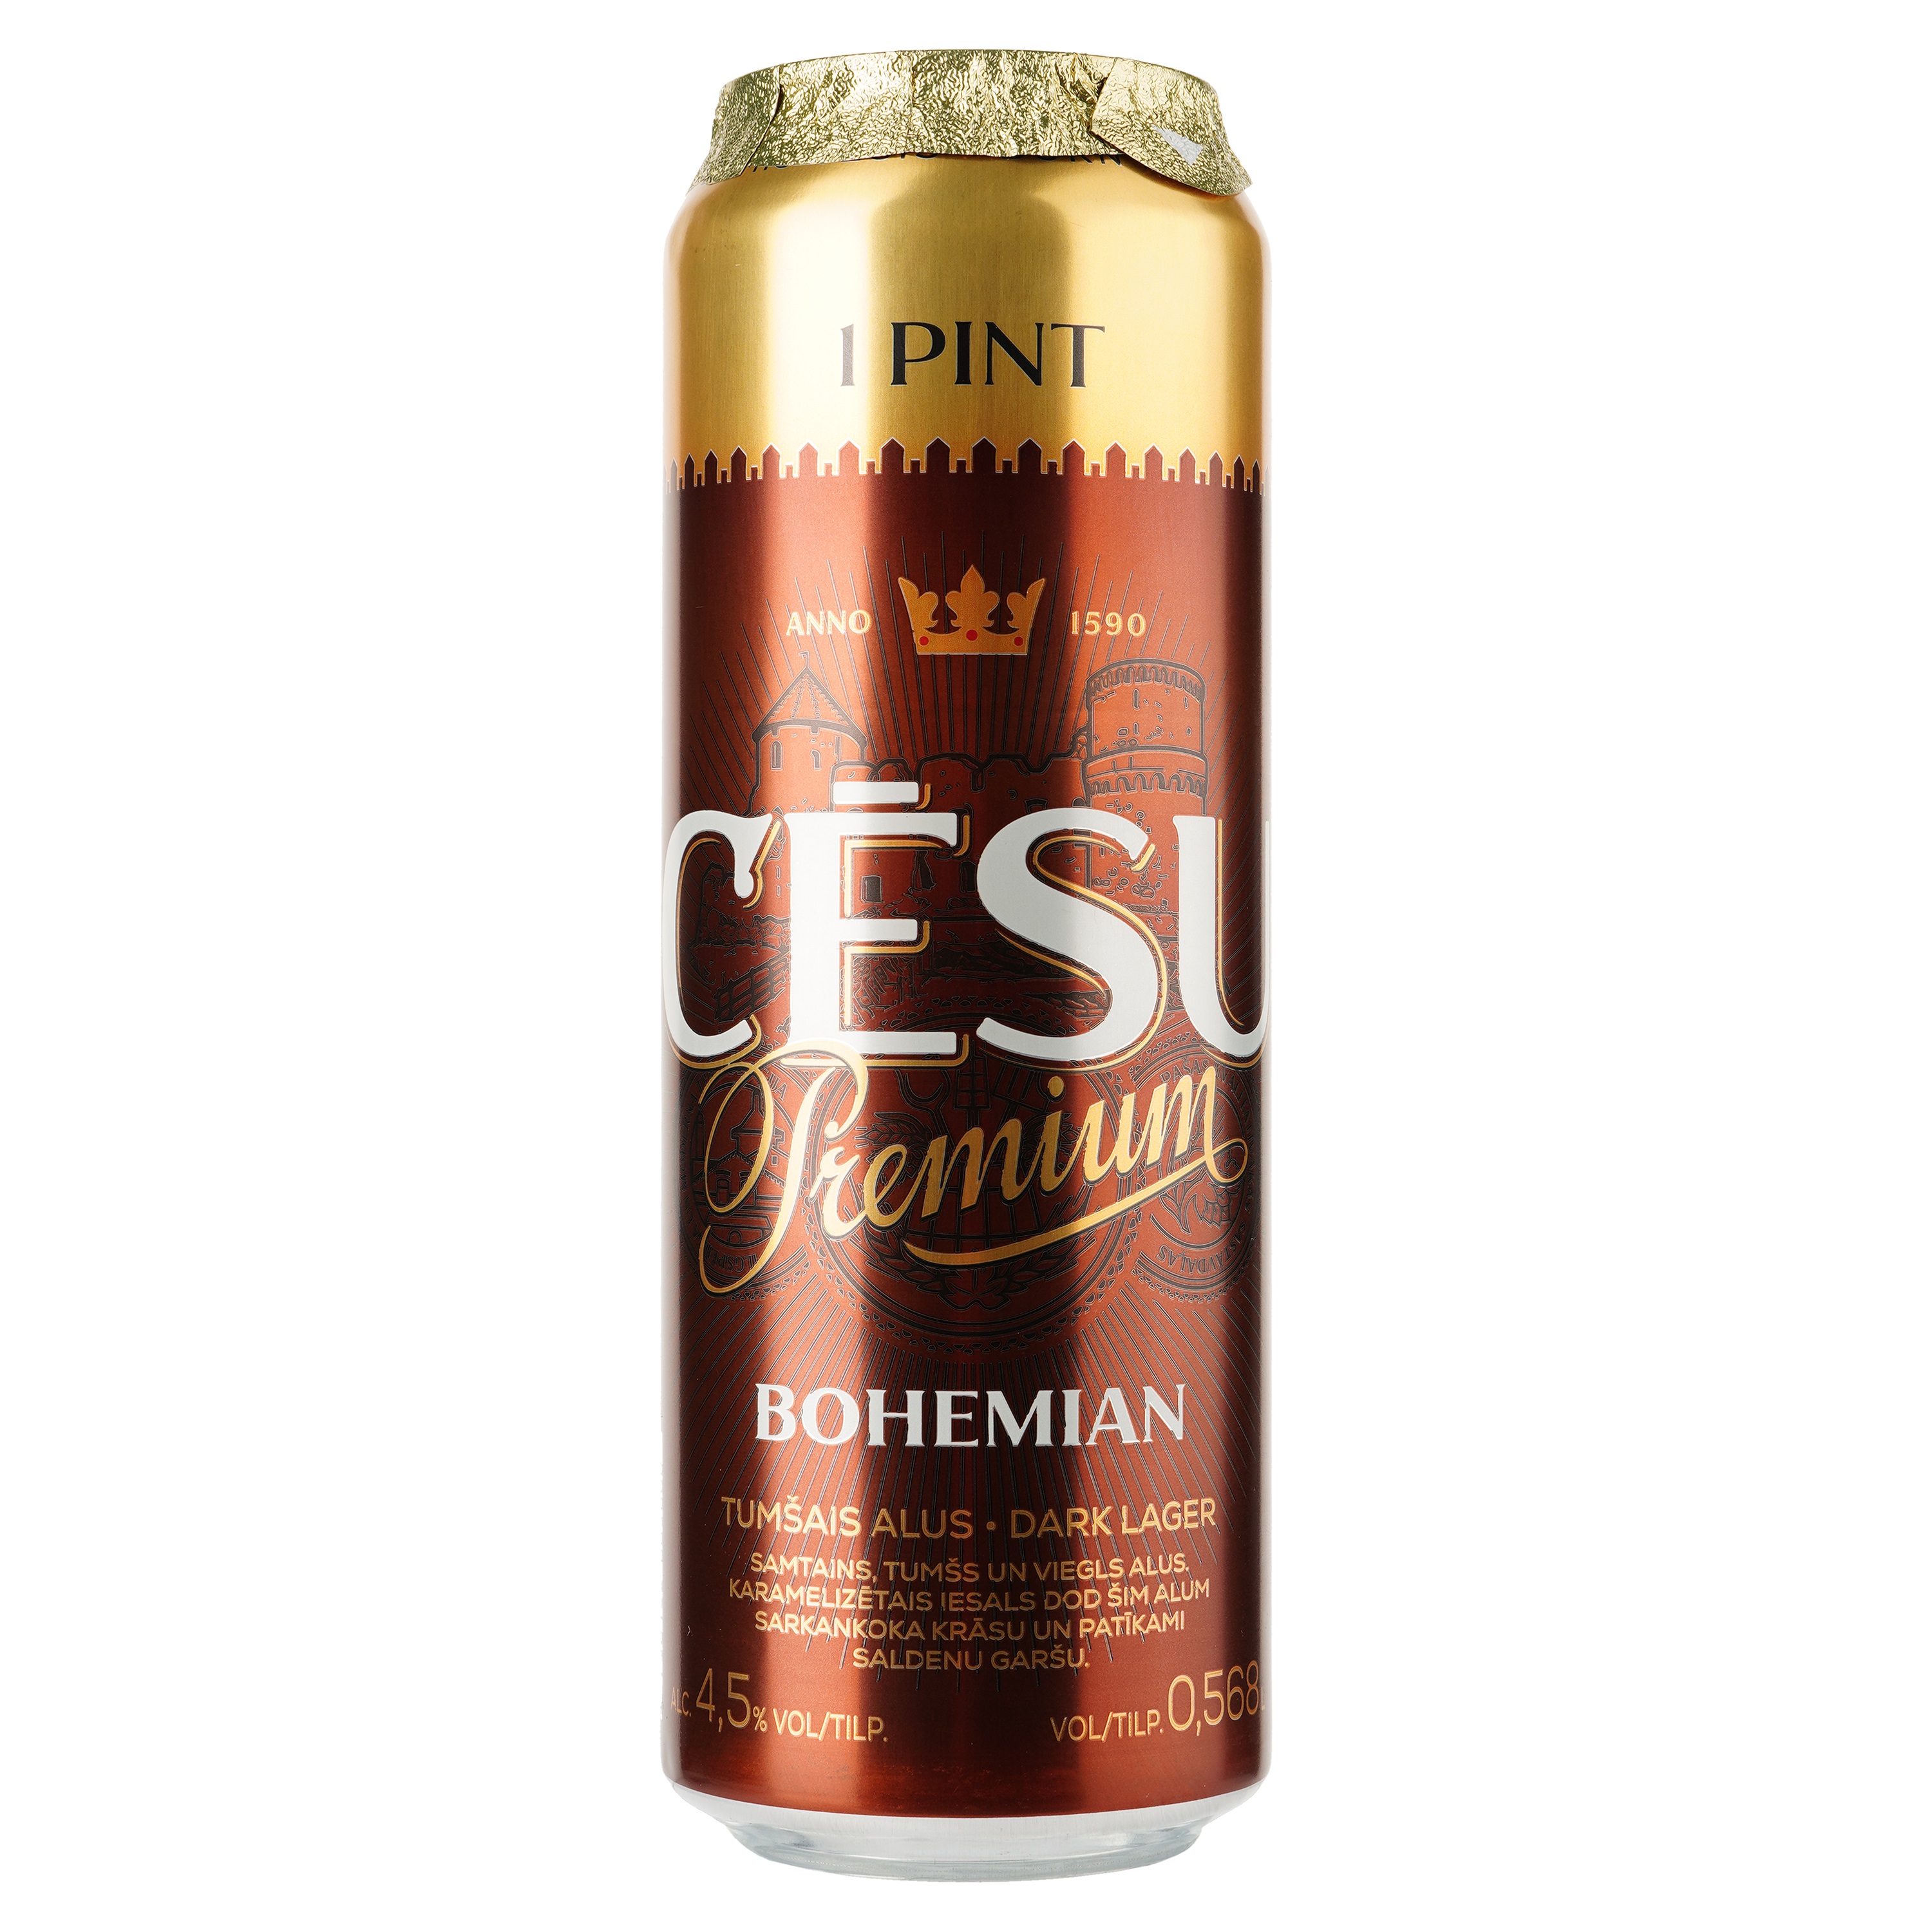 Пиво Cesu Premium Bohemian темное, фильтрованное, 4,5%, ж/б, 0,568 л - фото 1